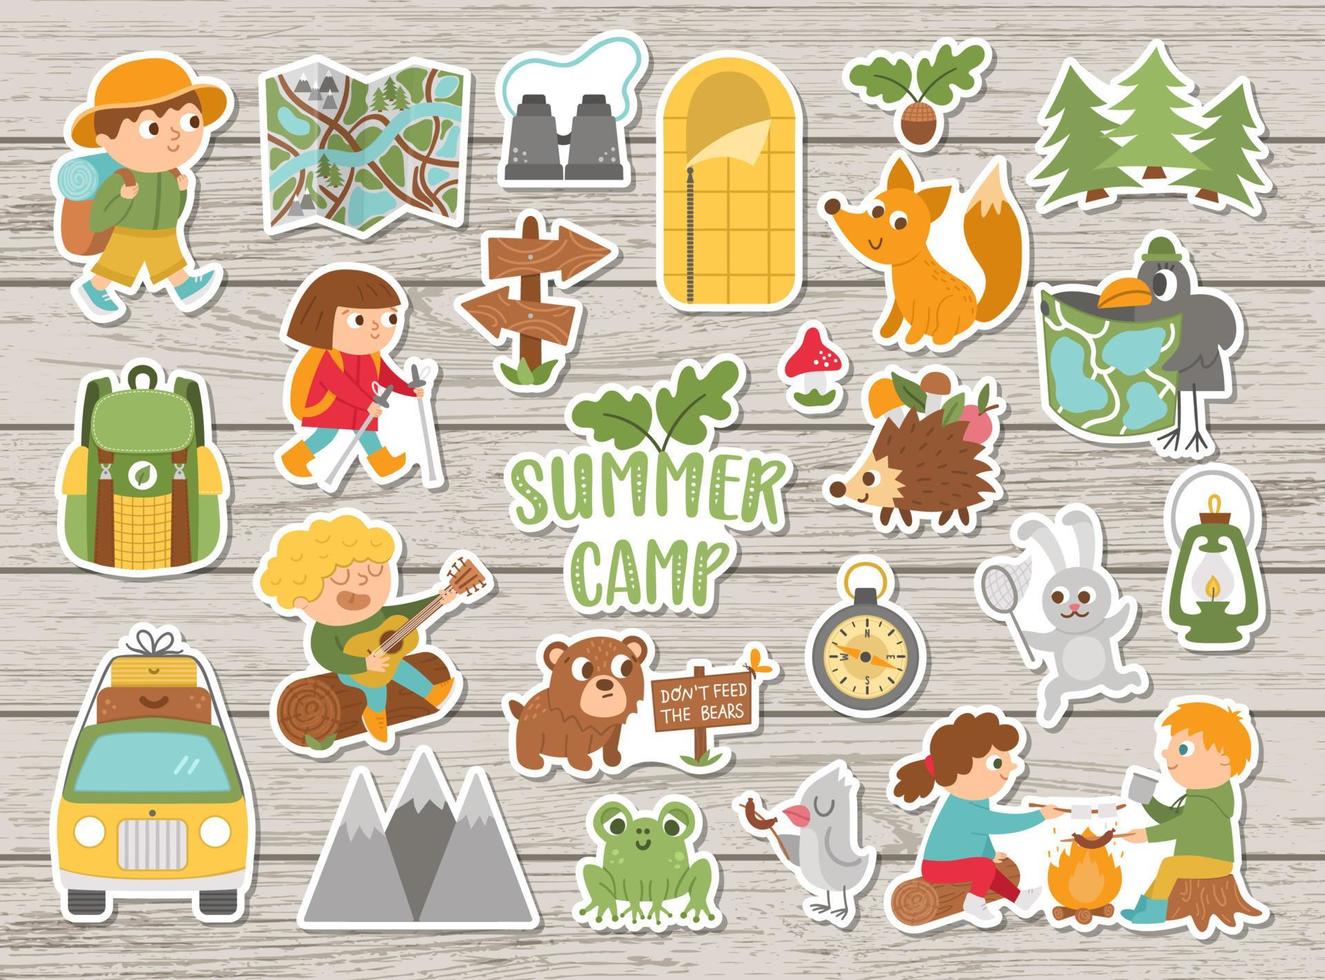 vektor sommarläger klistermärken set. camping, vandring, fiskeutrustning patchar samling med söta barn och skogsdjur på trä bakgrund. utomhus naturturism patchar pack